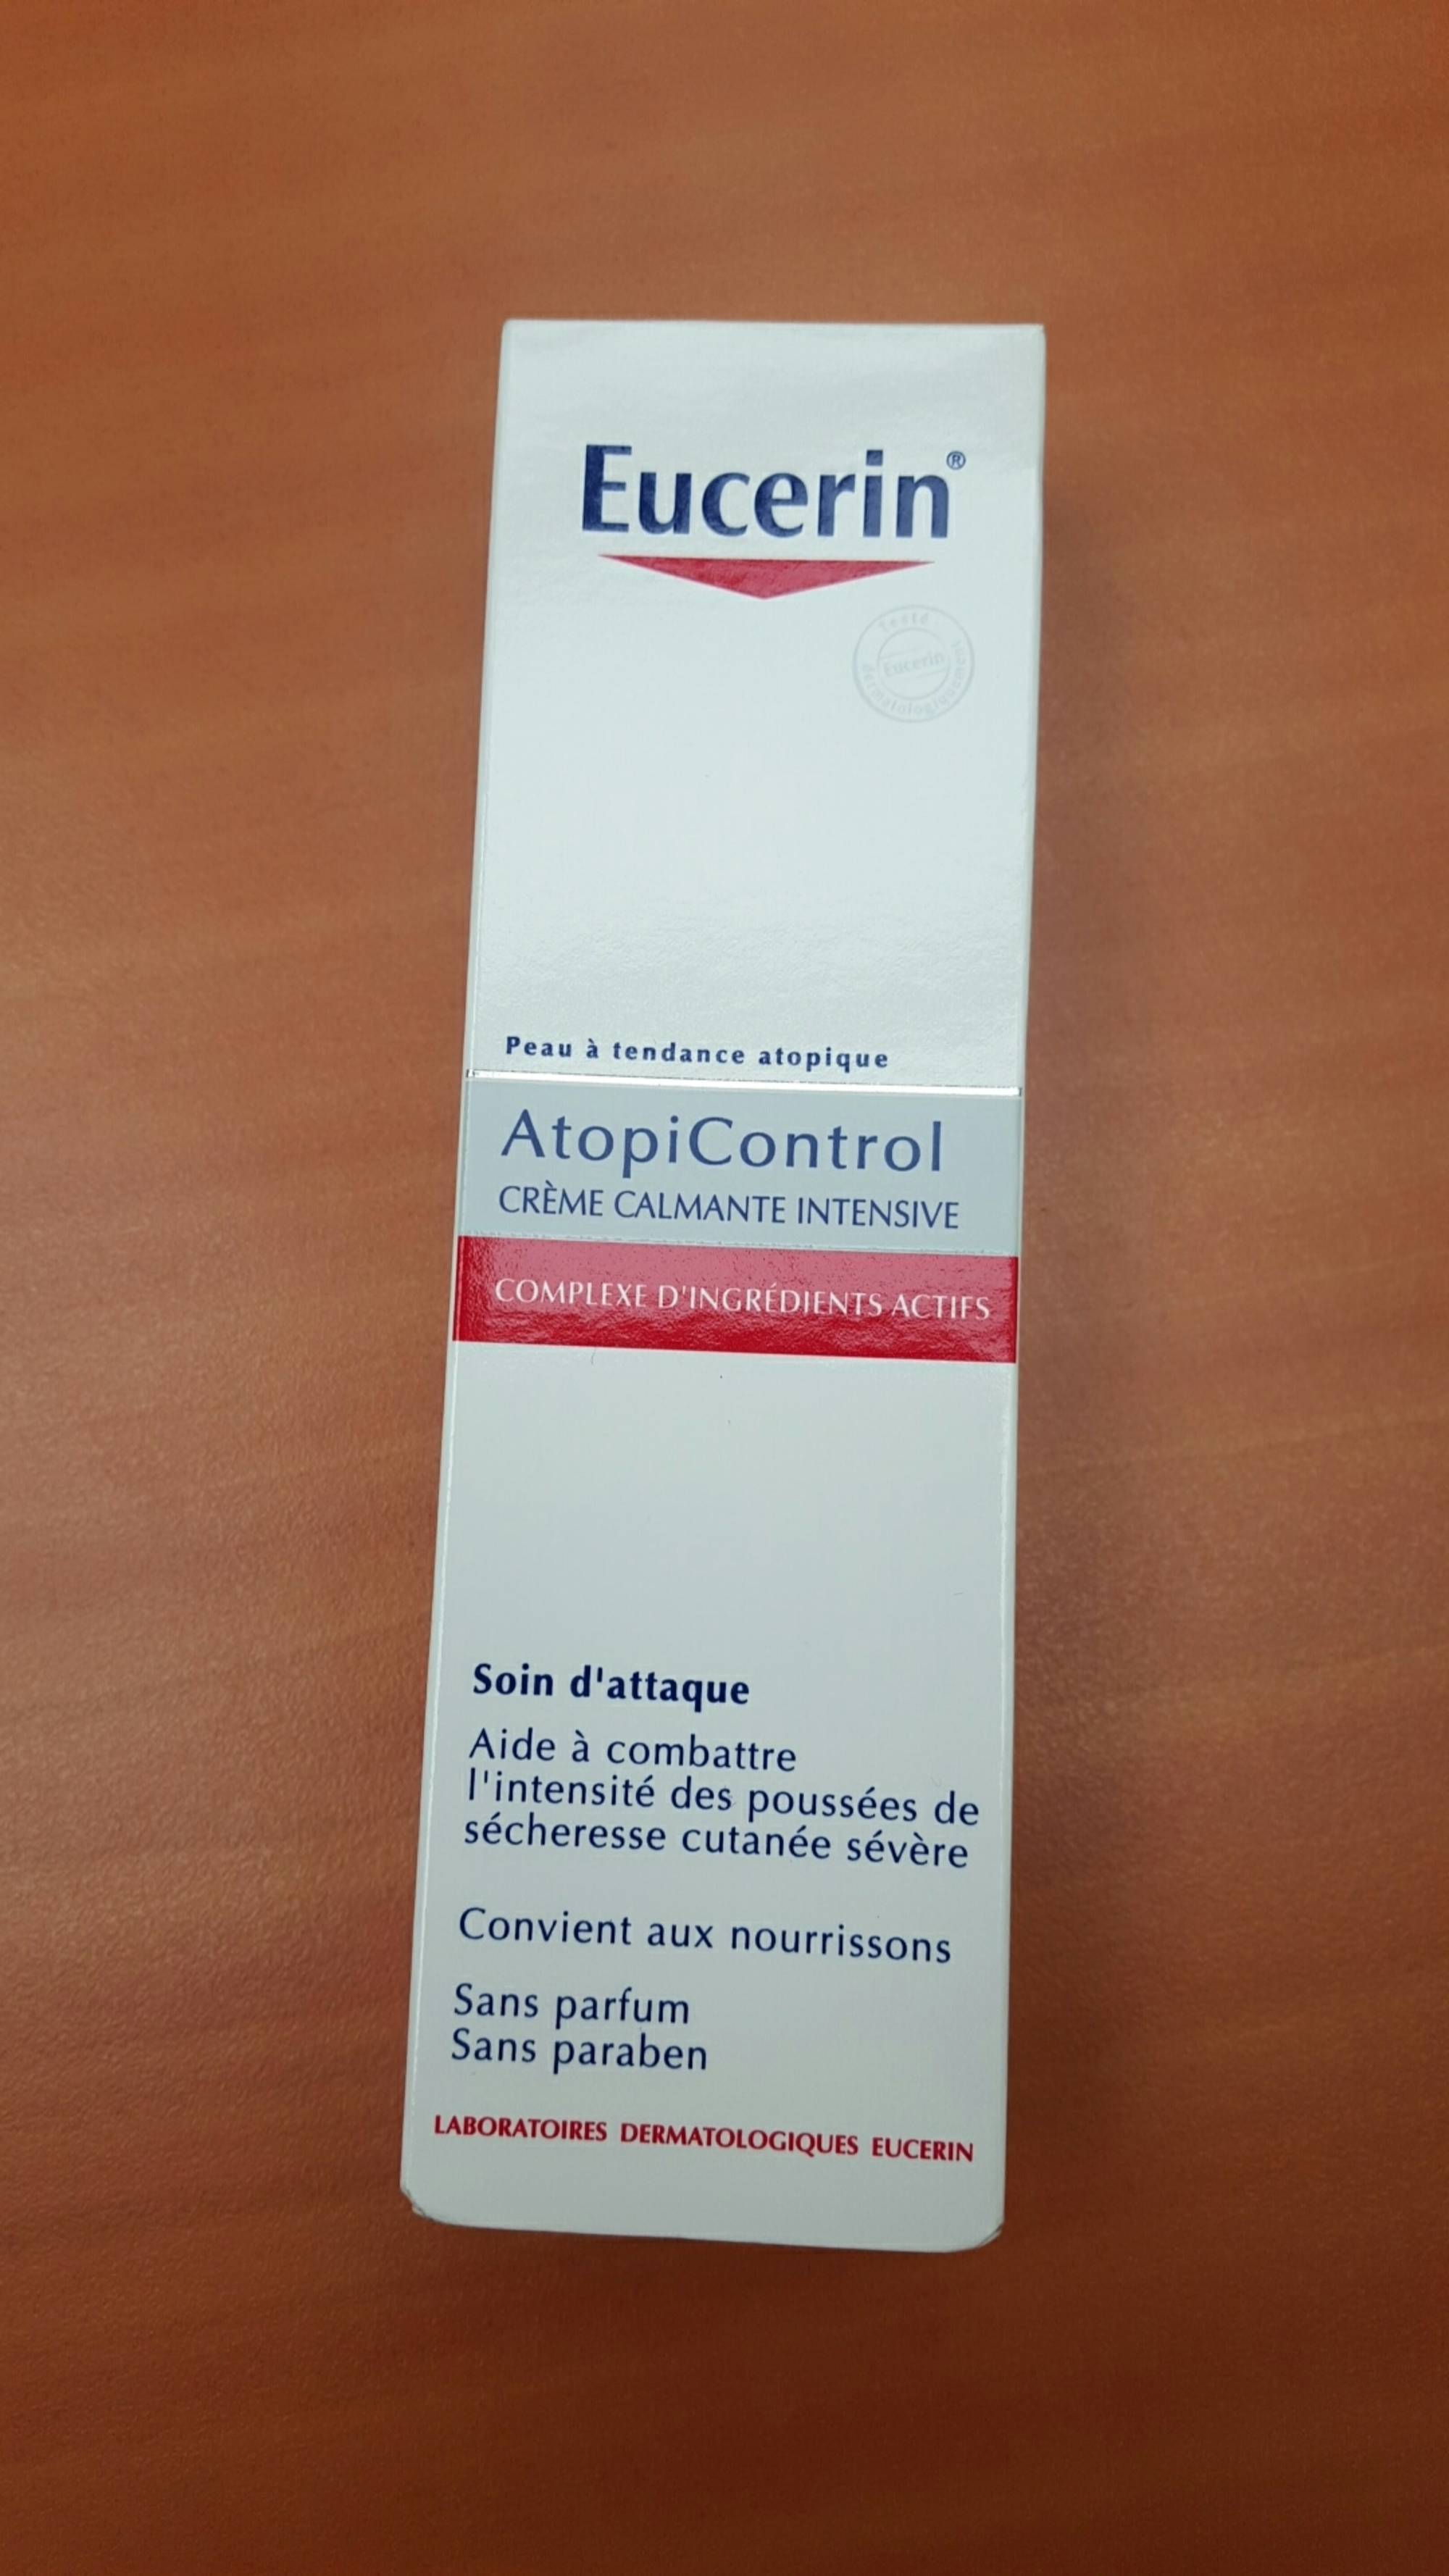 EUCERIN - AtopiControl crème calmante intensive